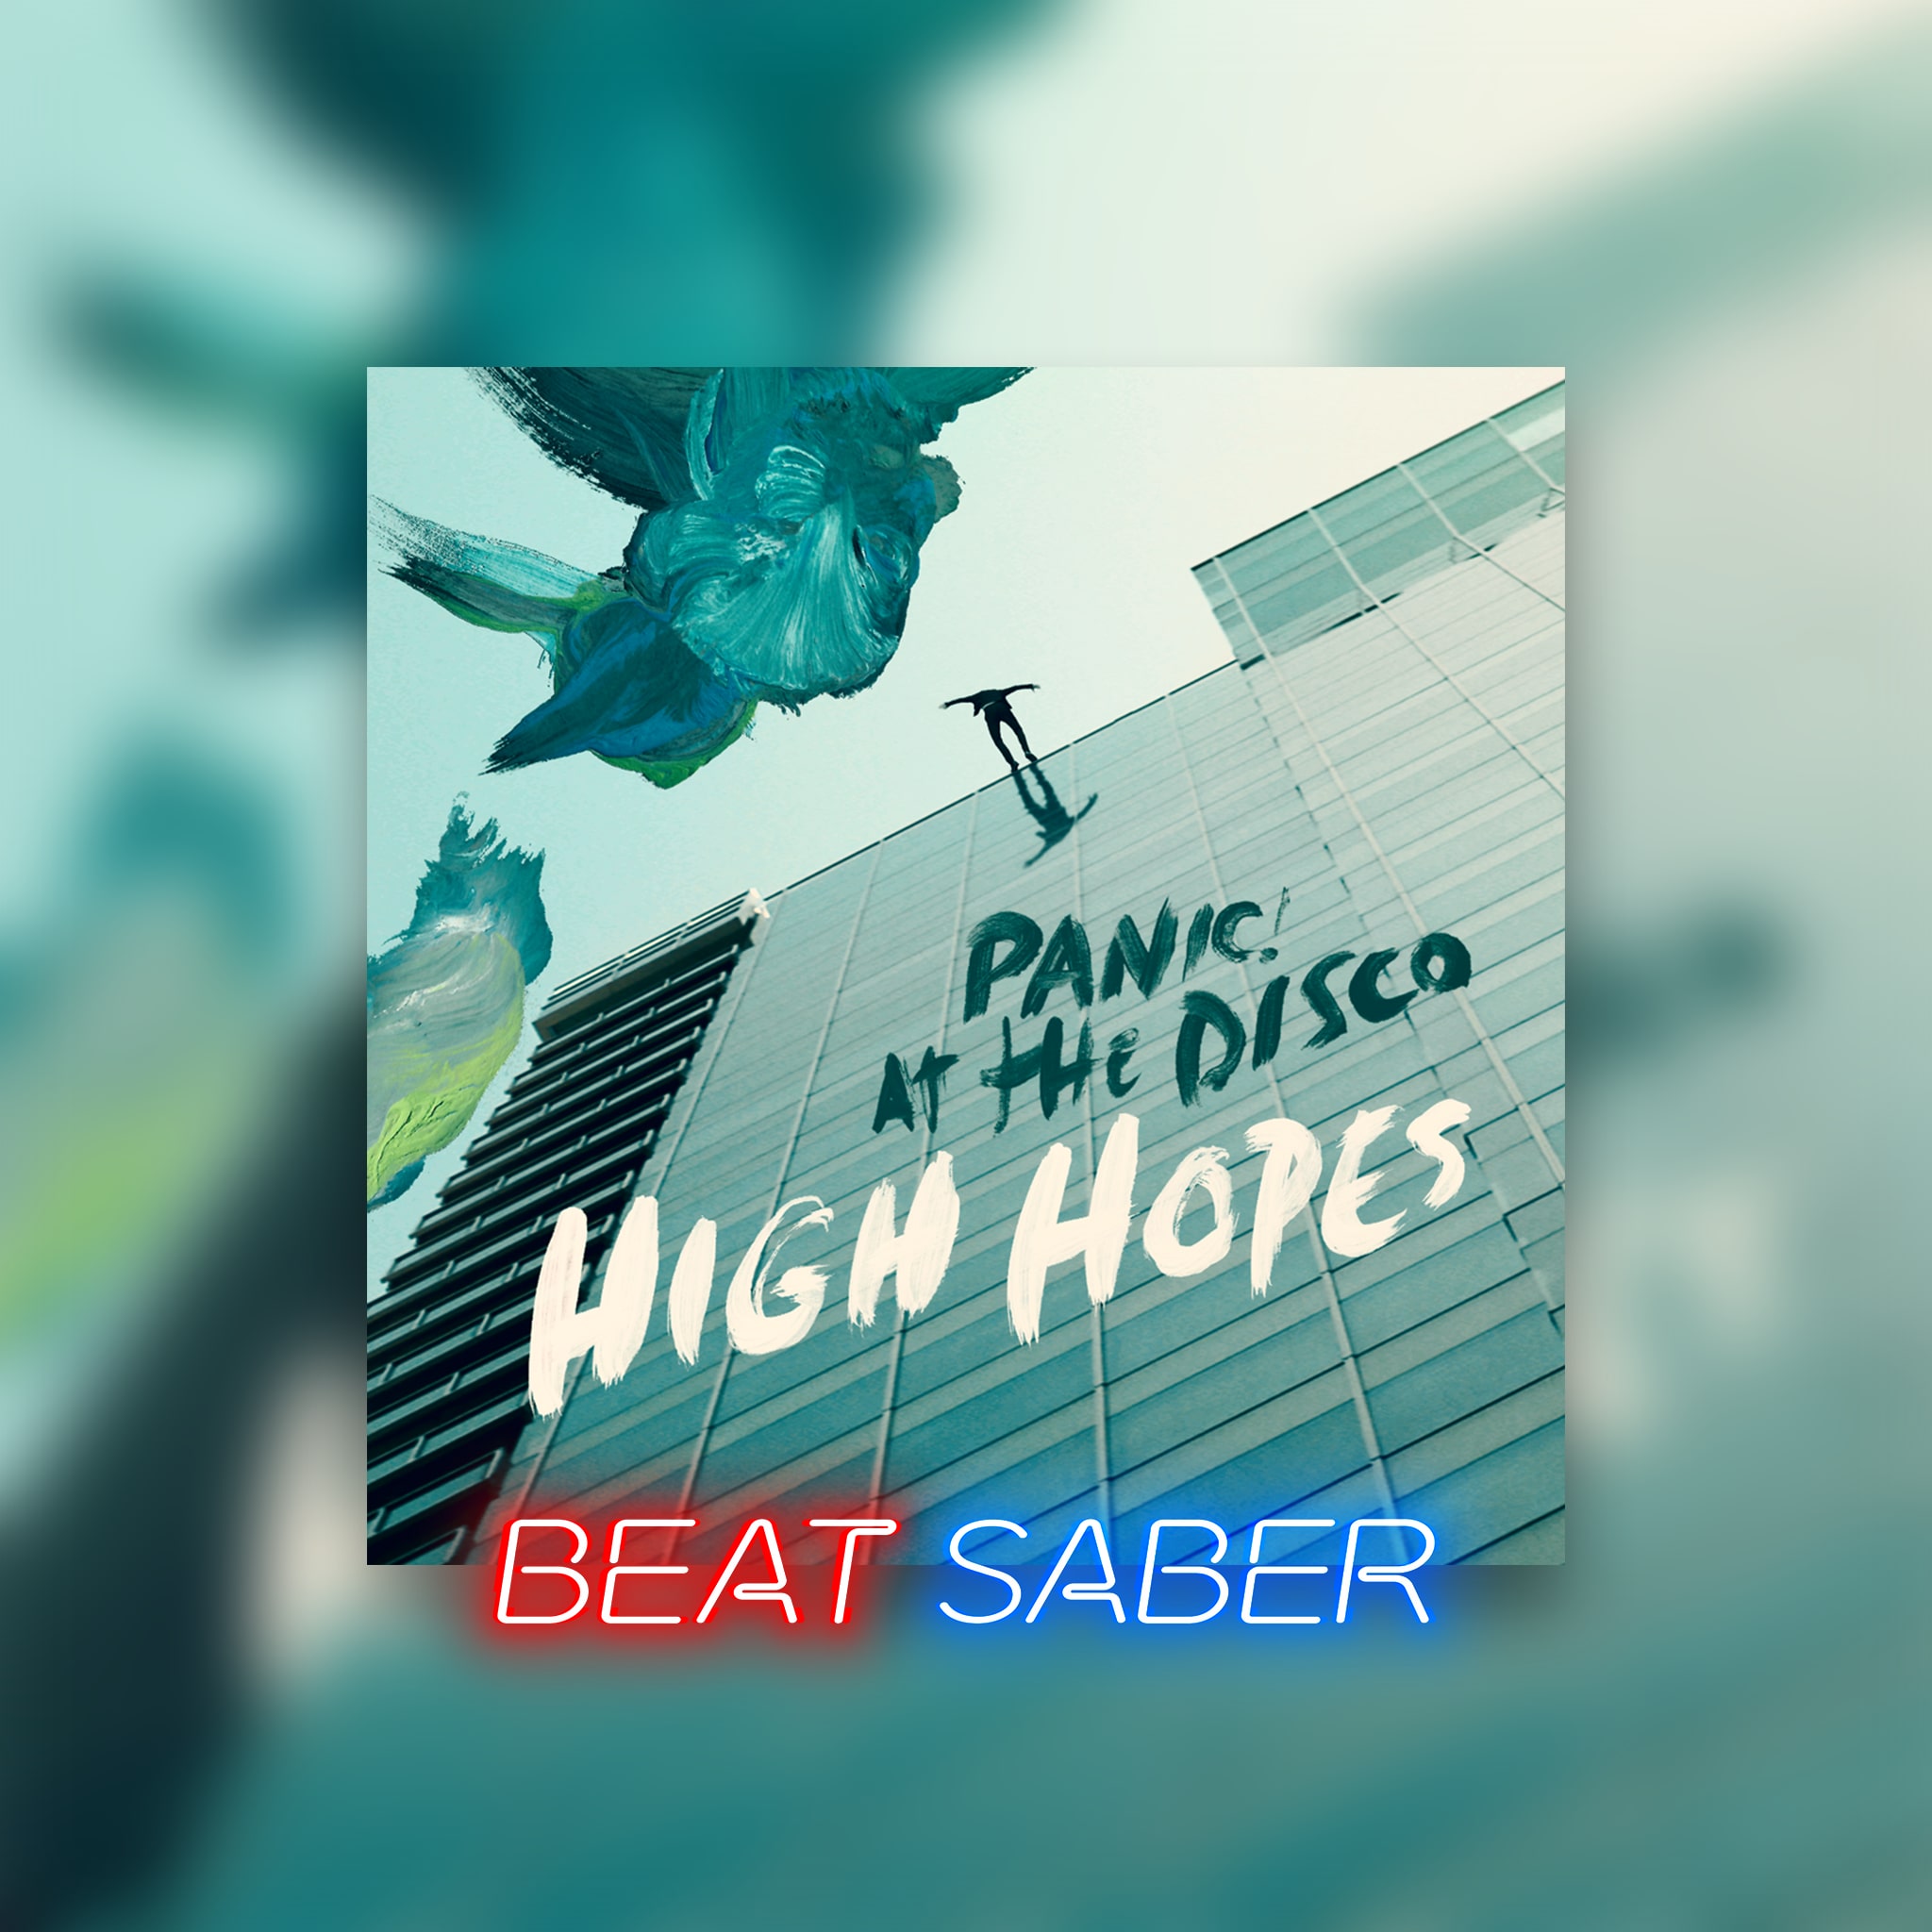 Saber: Panic! At Disco – 'High Hopes'